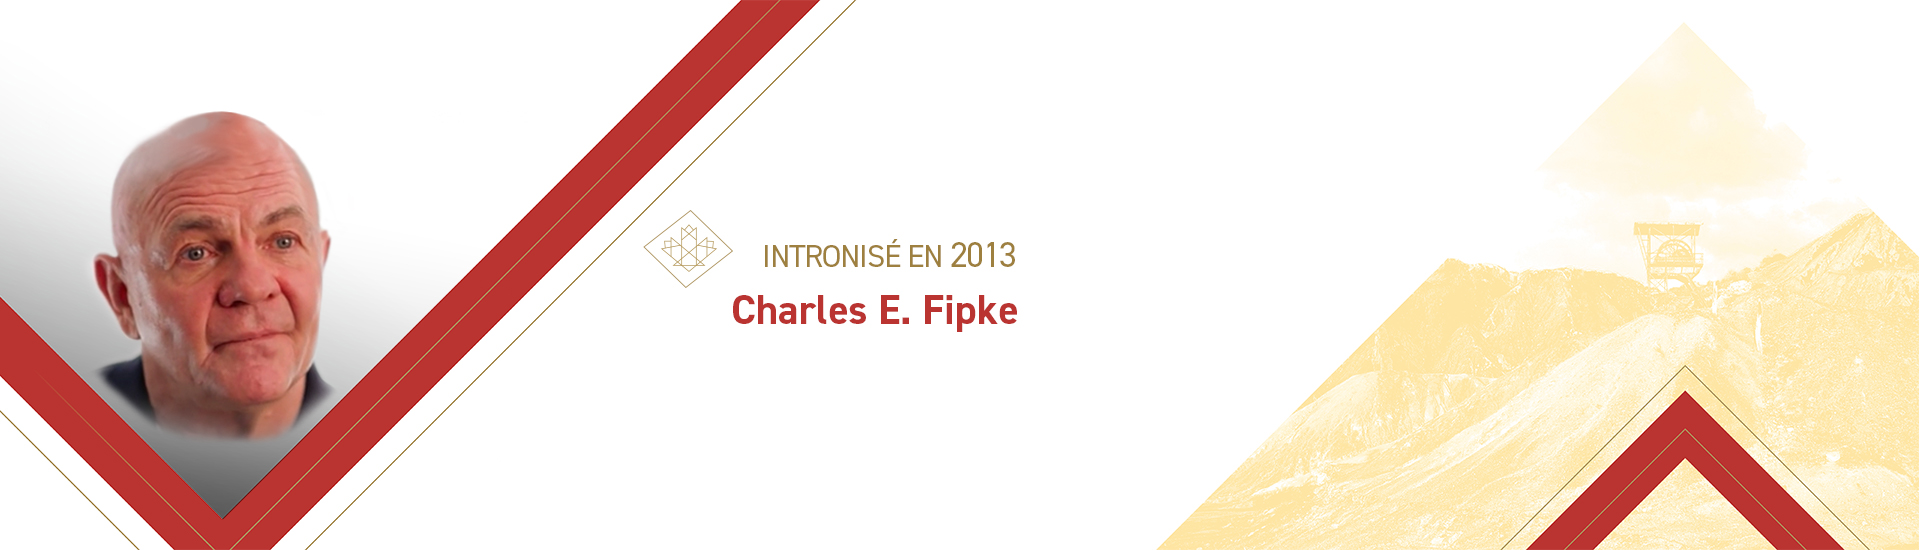 Charles E. Fipke (° 1946)